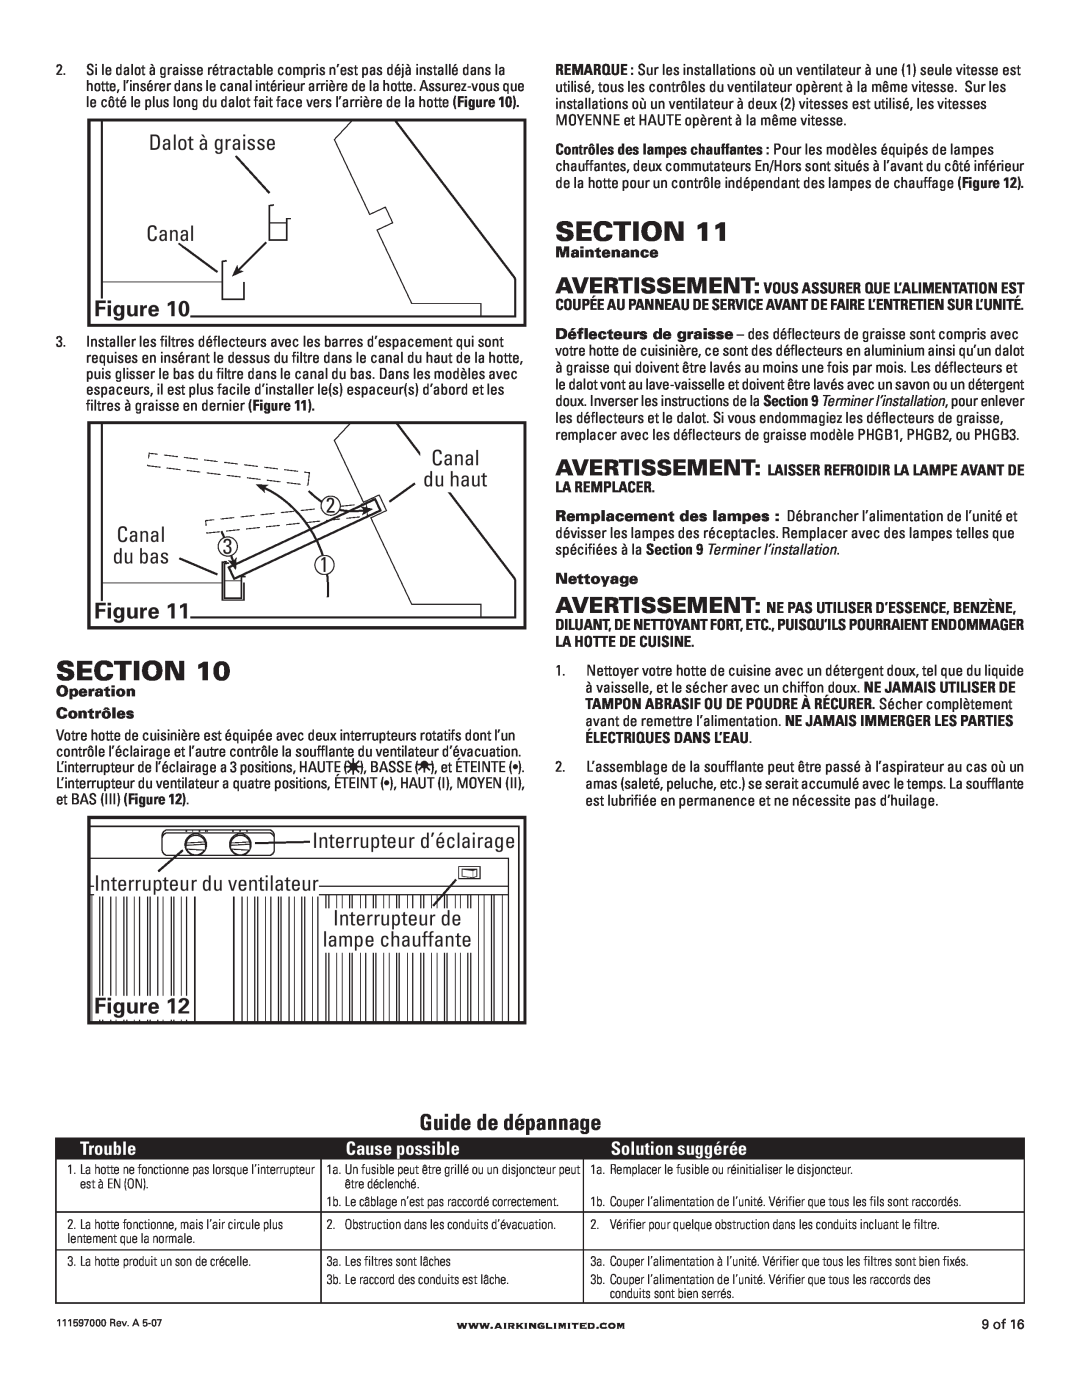 Air King 42" models Section, Figure Guide de dépannage, du haut, Dalot à graisse, Canal, du bas, Trouble, Cause possible 